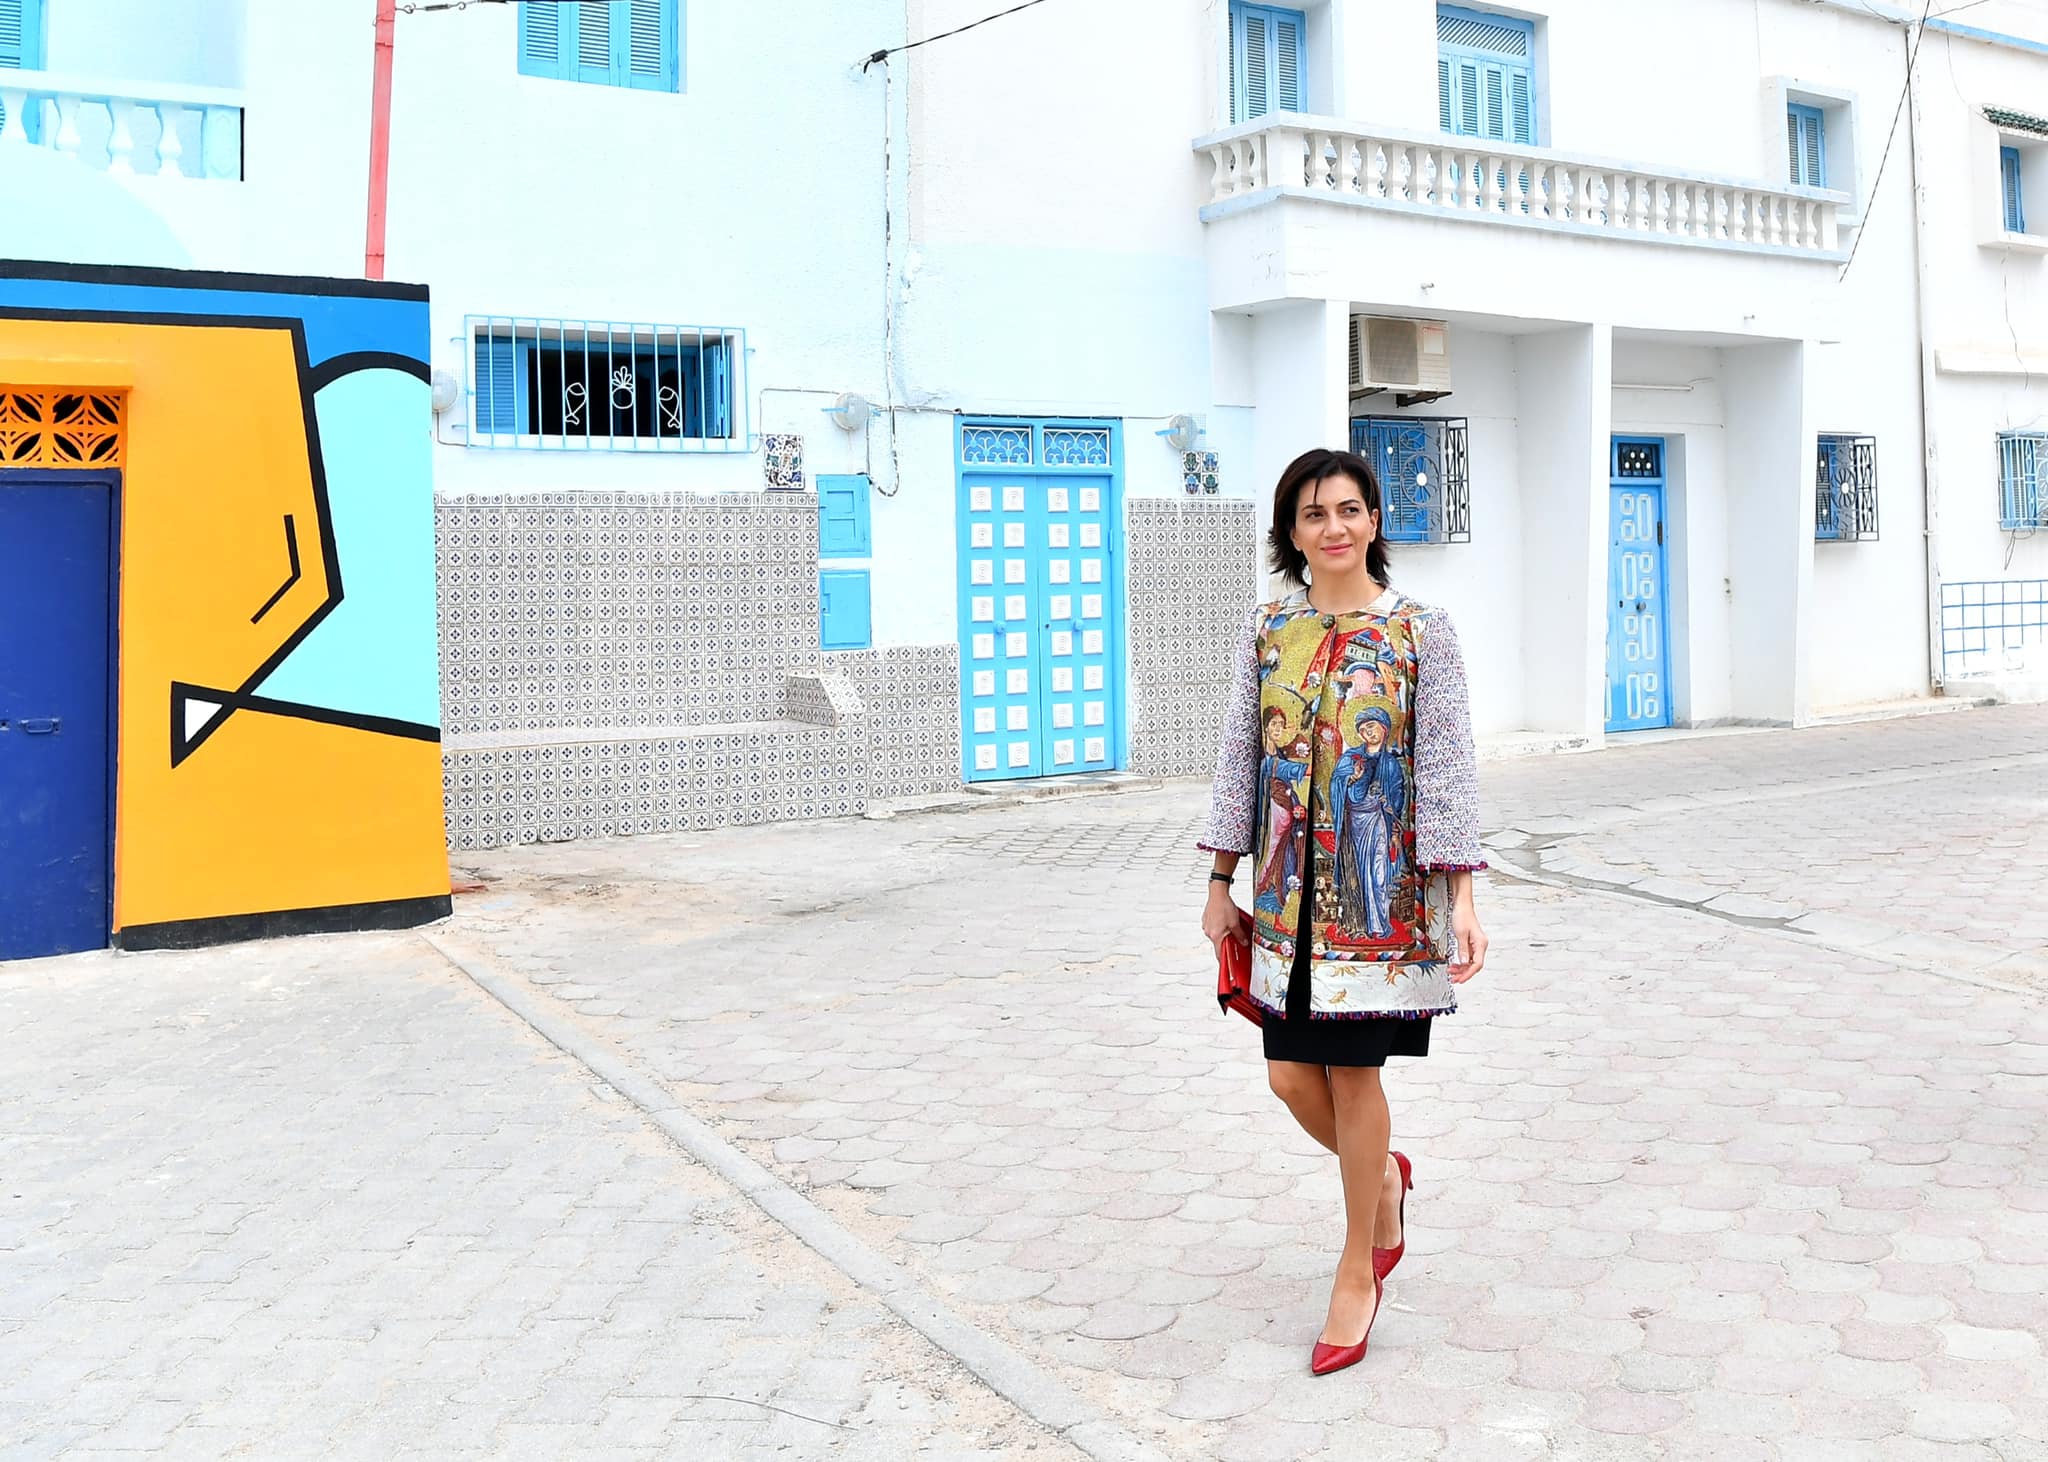 Աննա Հակոբյանը նոր լուսանկարներ է հրապարակել, այս անգամ Թունիսից